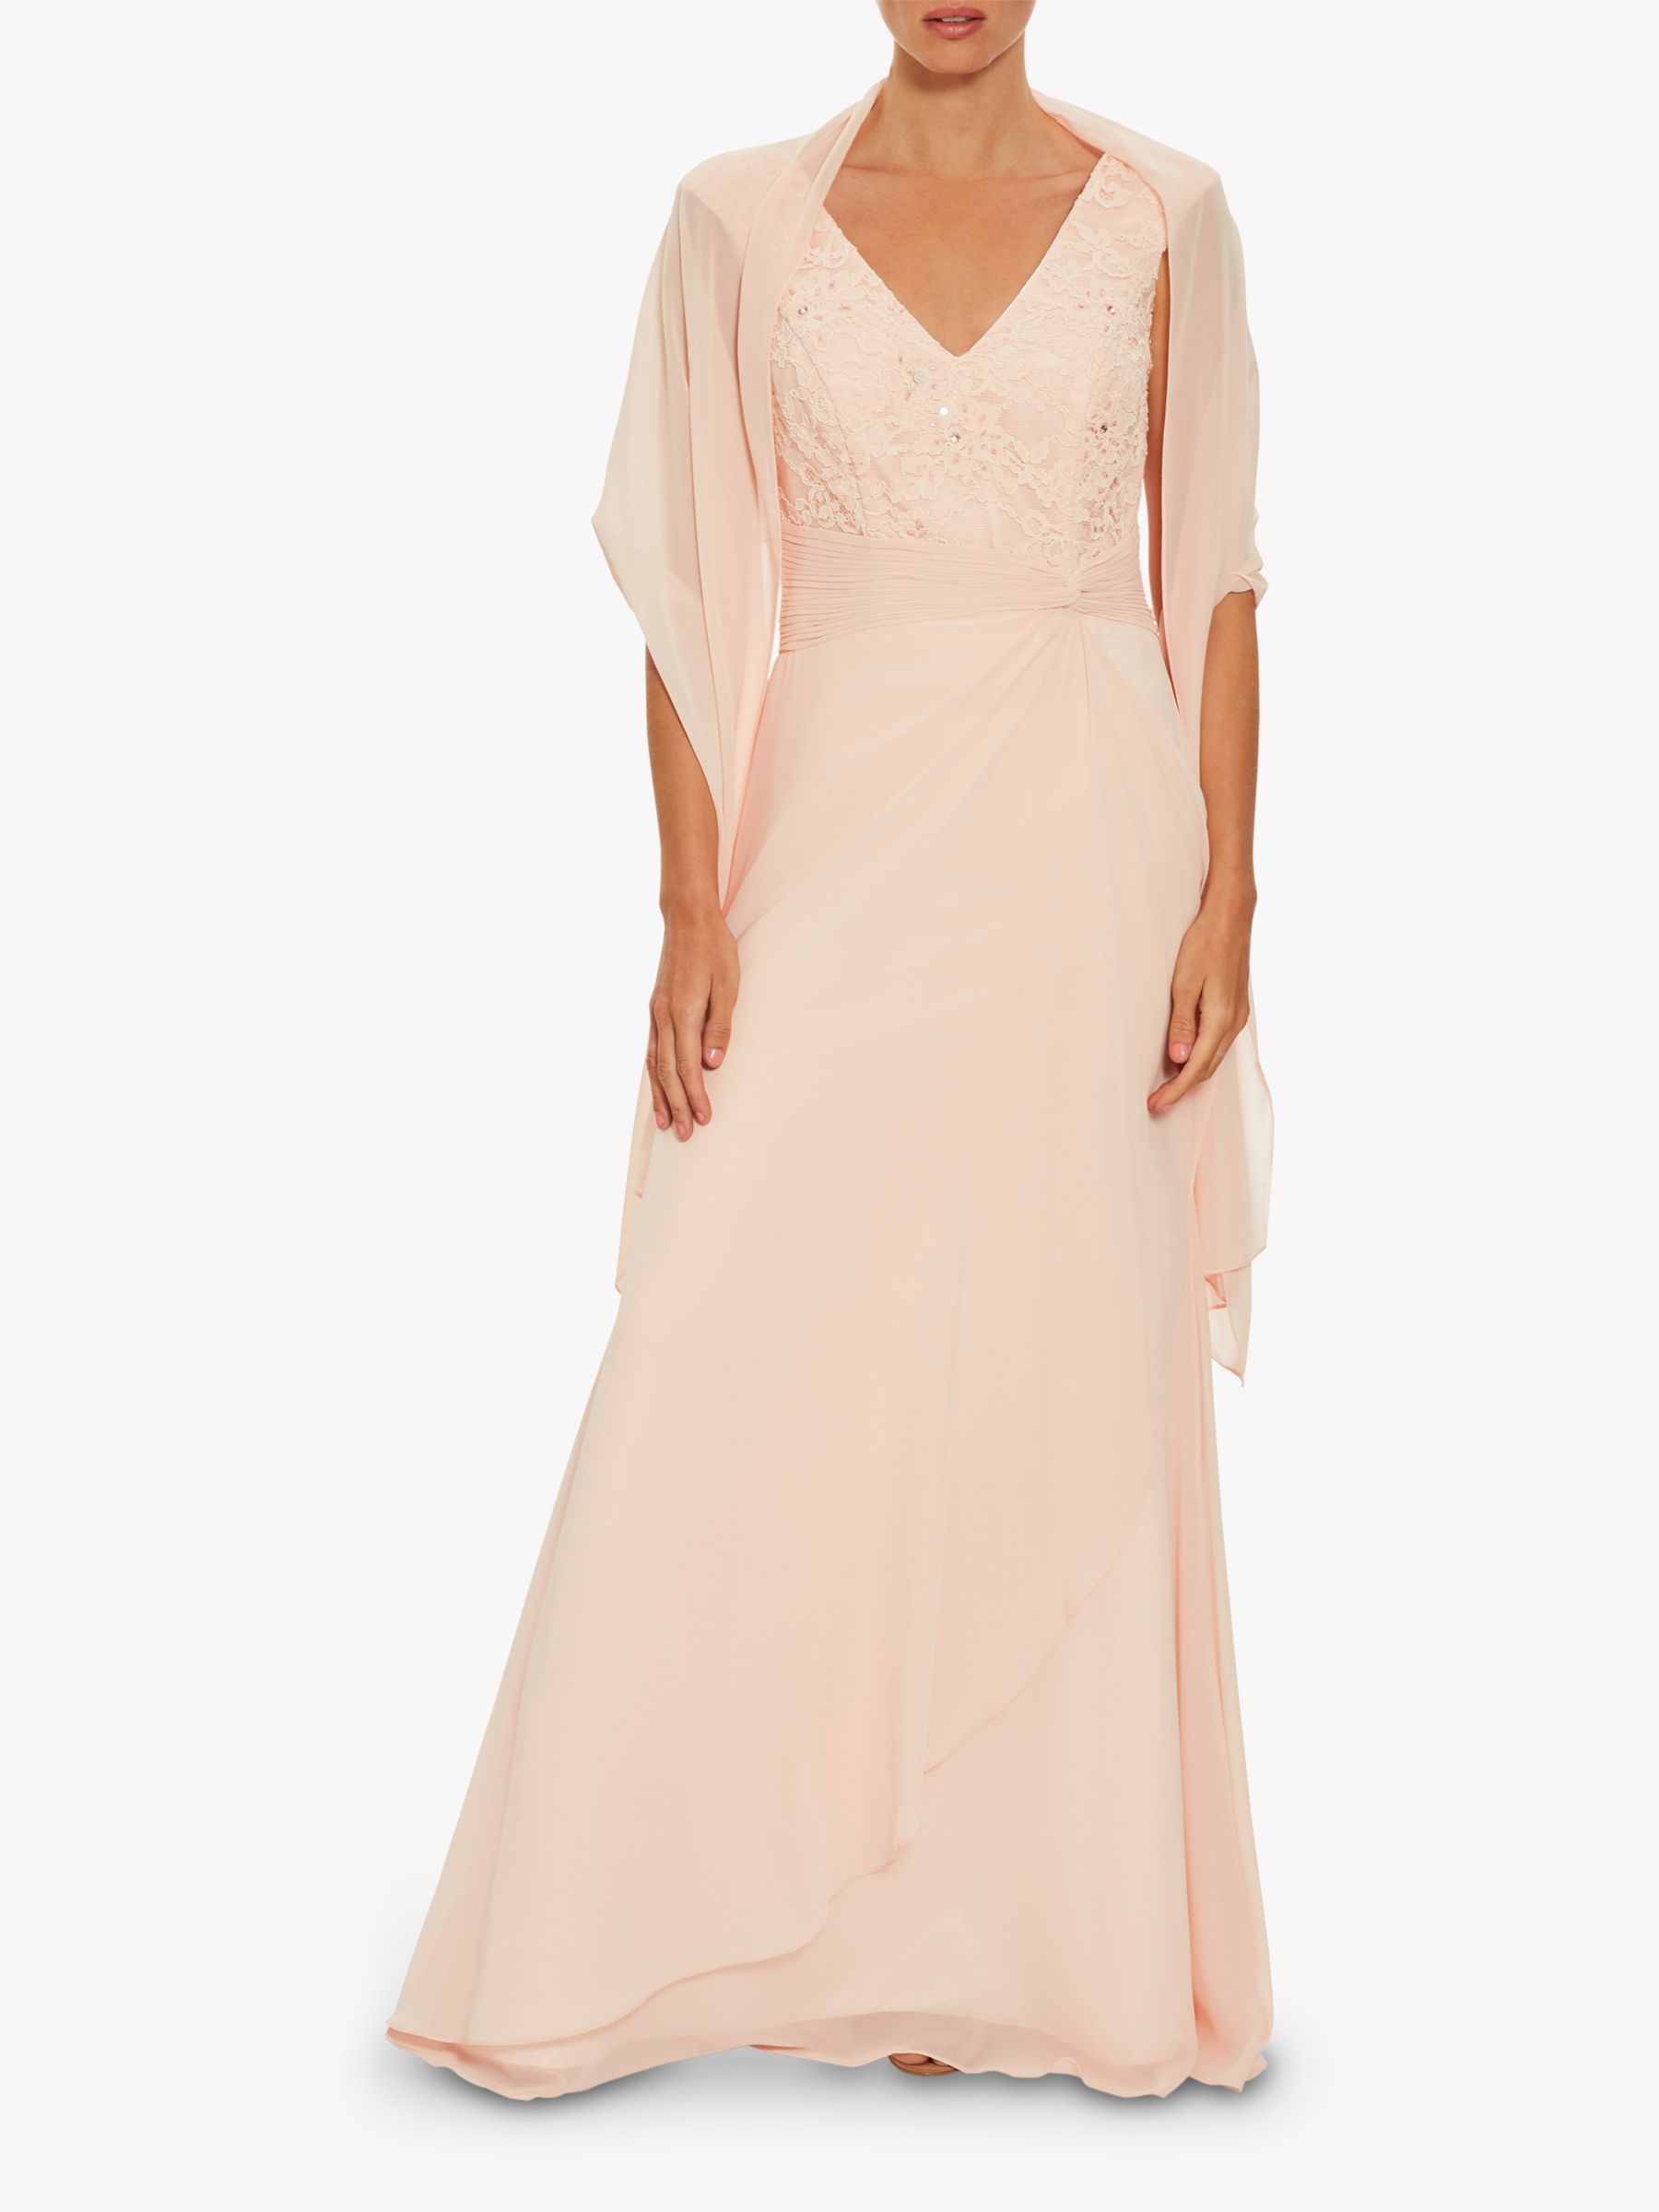 Gina Bacconi Betony Chiffon Dress, Pink, 10